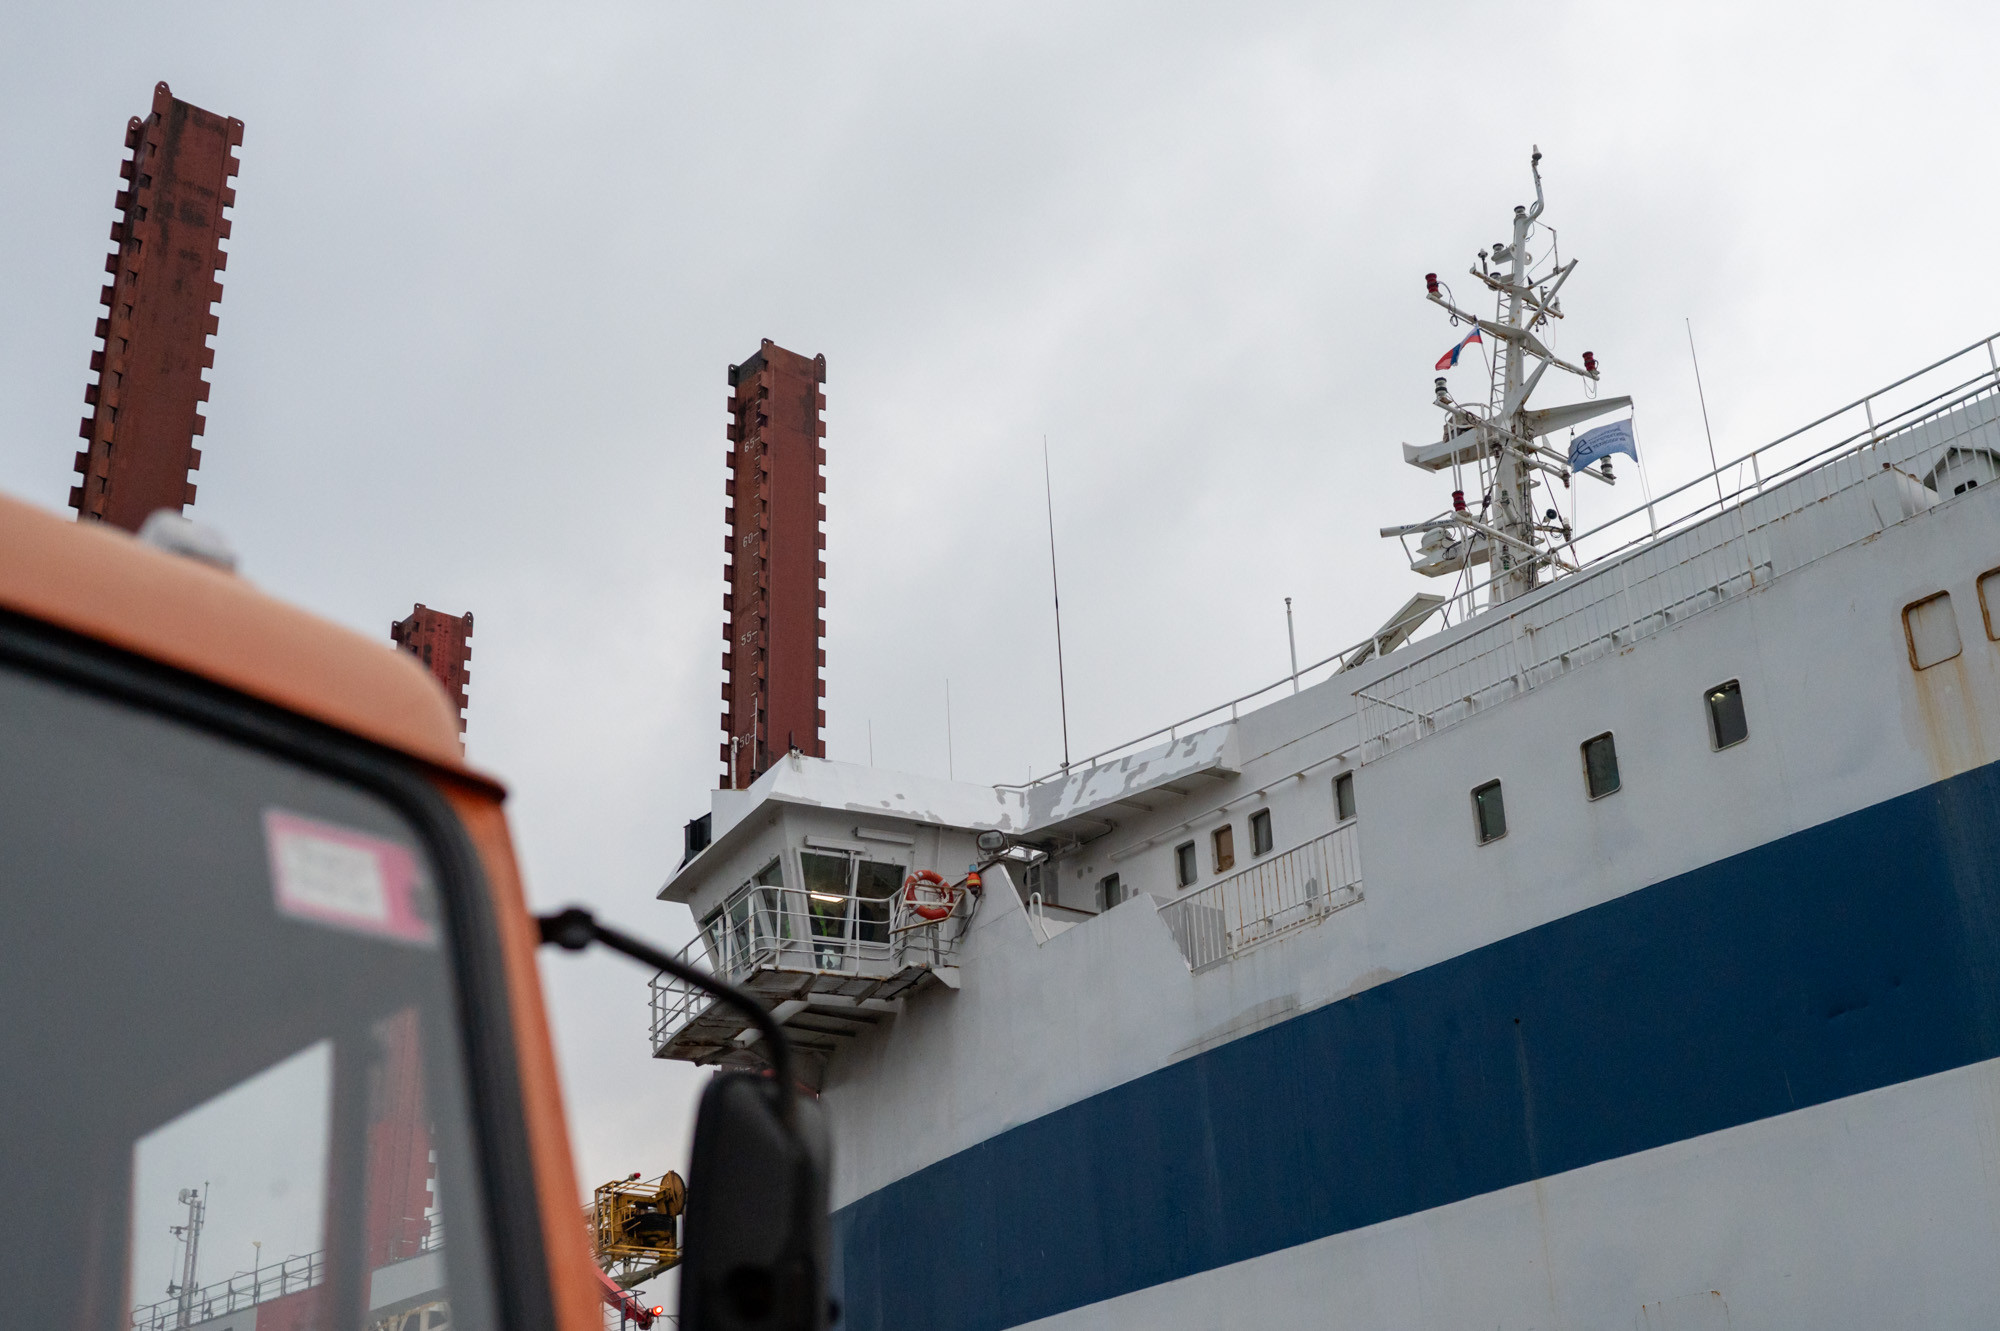 Денис Мантуров и Андрей Чибис осмотрели кабелеукладочное судно «Яуза» и завод подводного кабеля